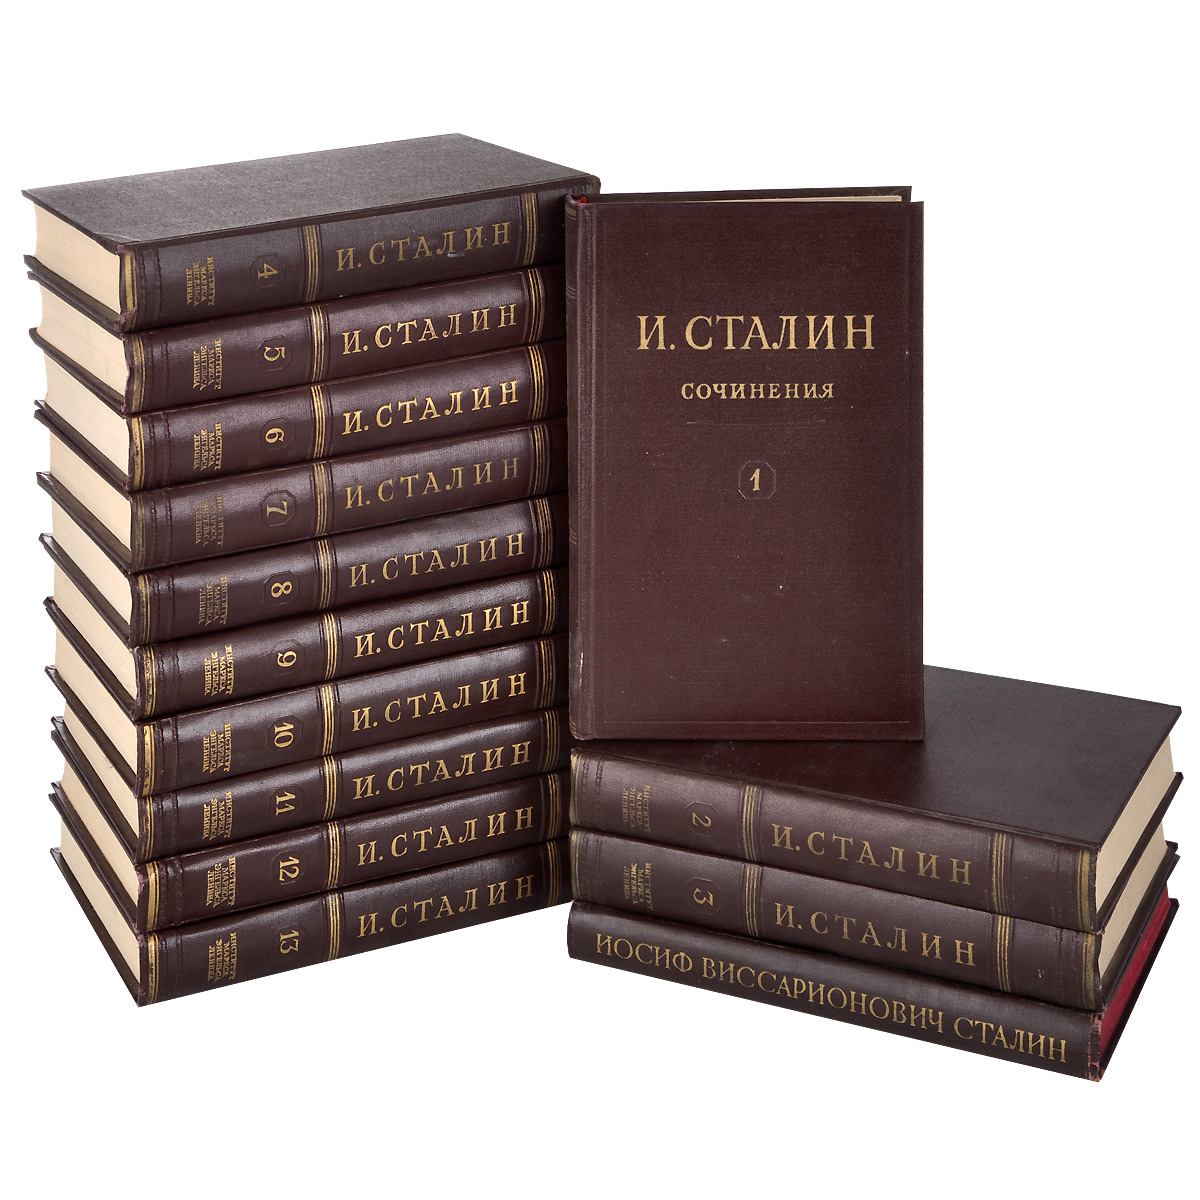 И. Сталин. Собрание сочинений в 13 томах. Краткая биография (комплект из 14 книг)